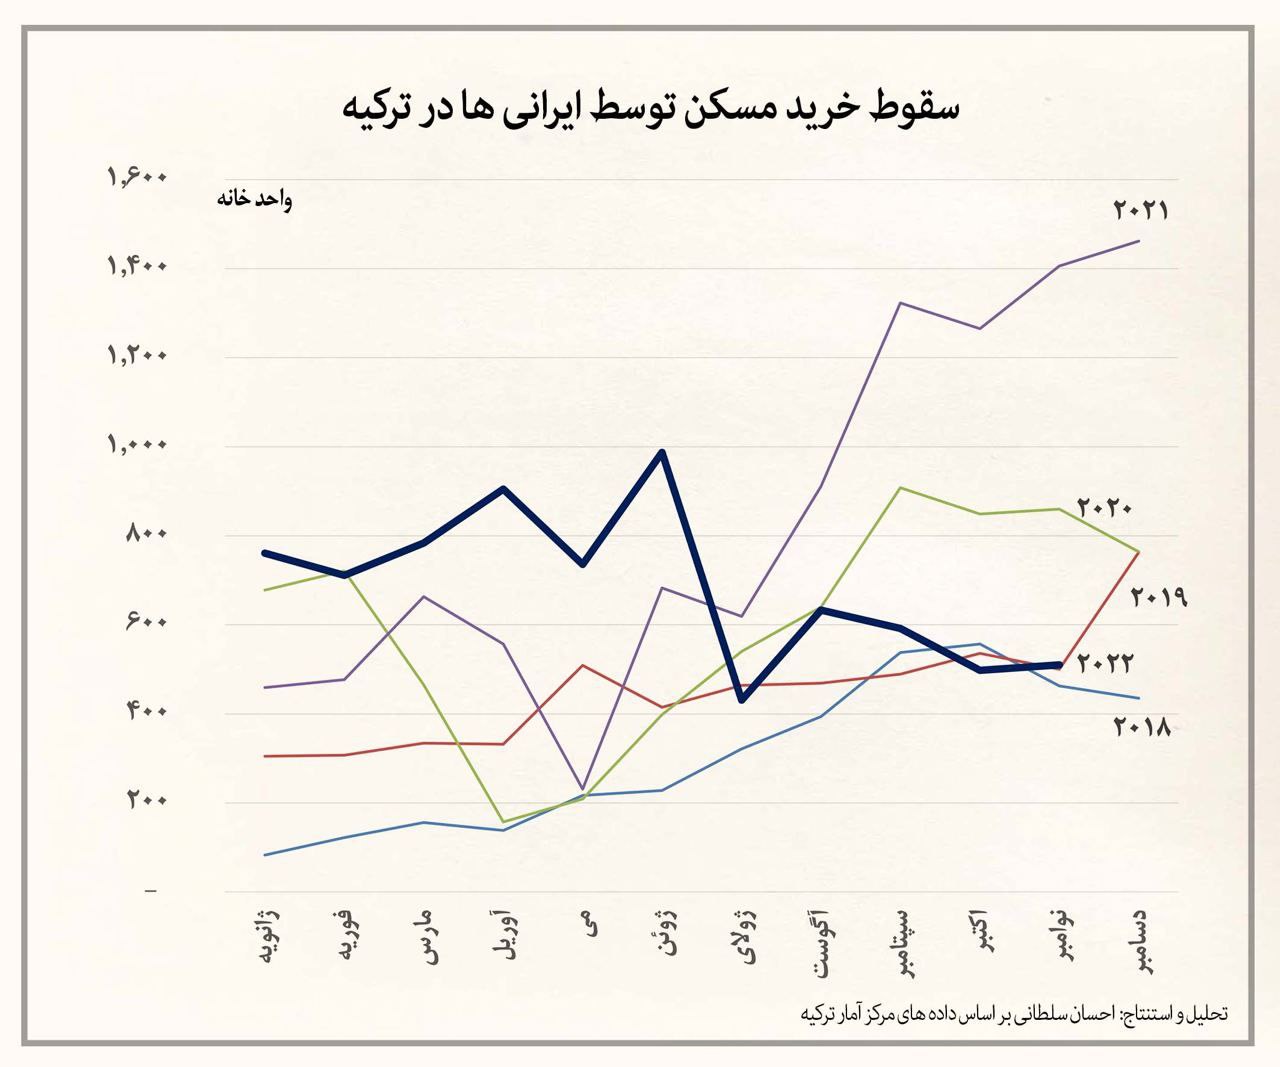 سقوط خرید خانه توسط ایرانیان در ترکیه